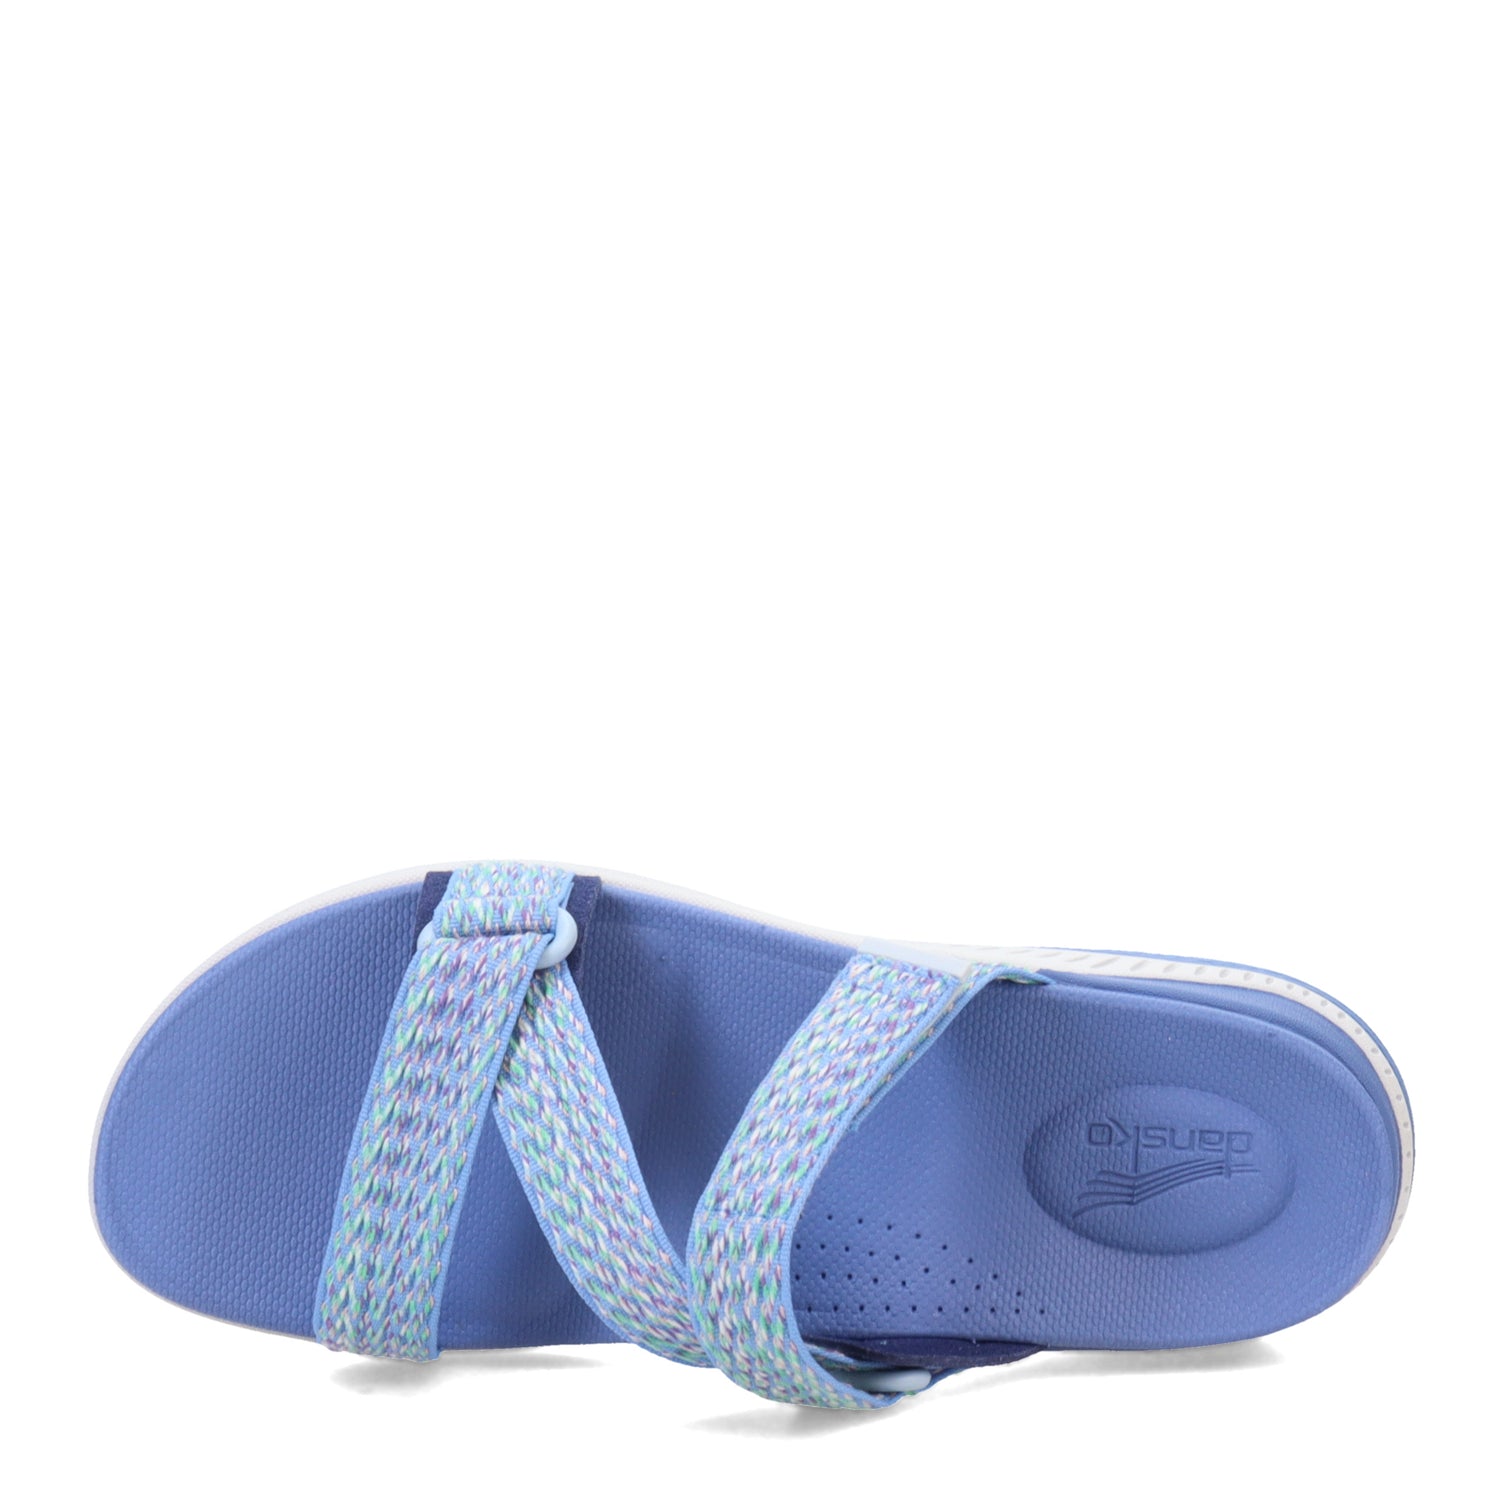 Peltz Shoes  Women's Dansko Rosette Sandal Blue 4916-545400